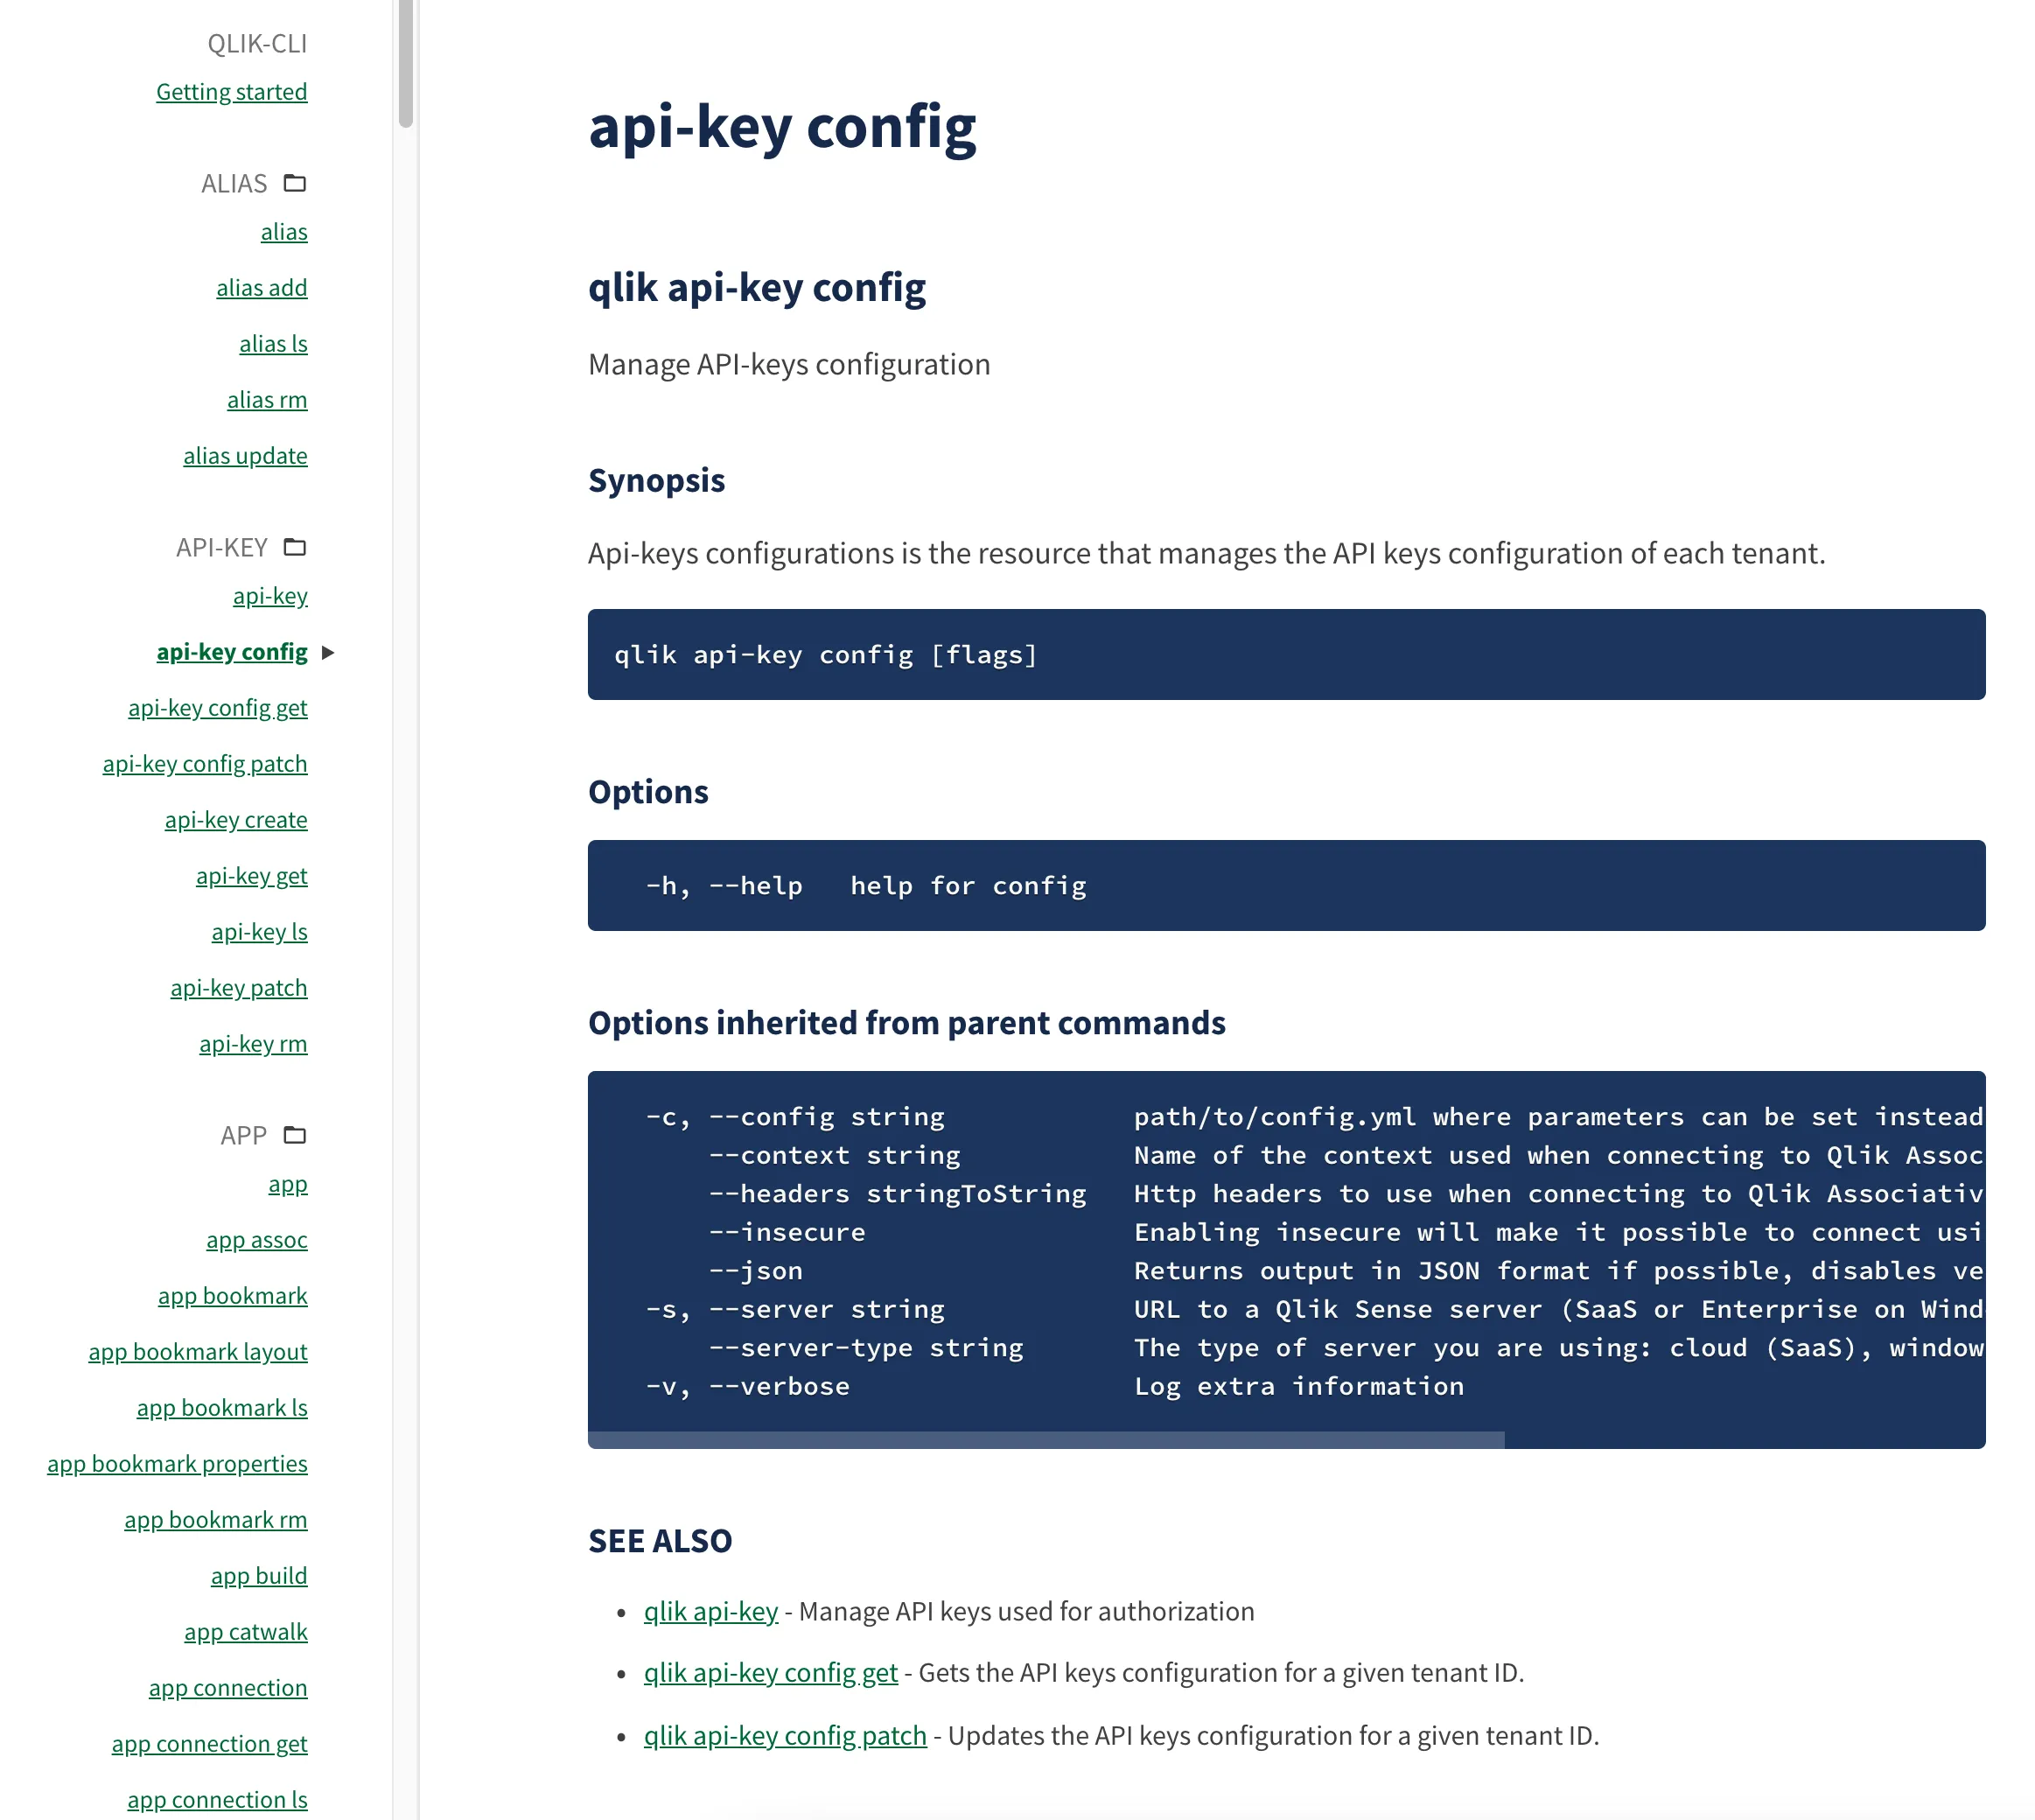 a screenshot of some qlik-cli documentation on
qlik.dev